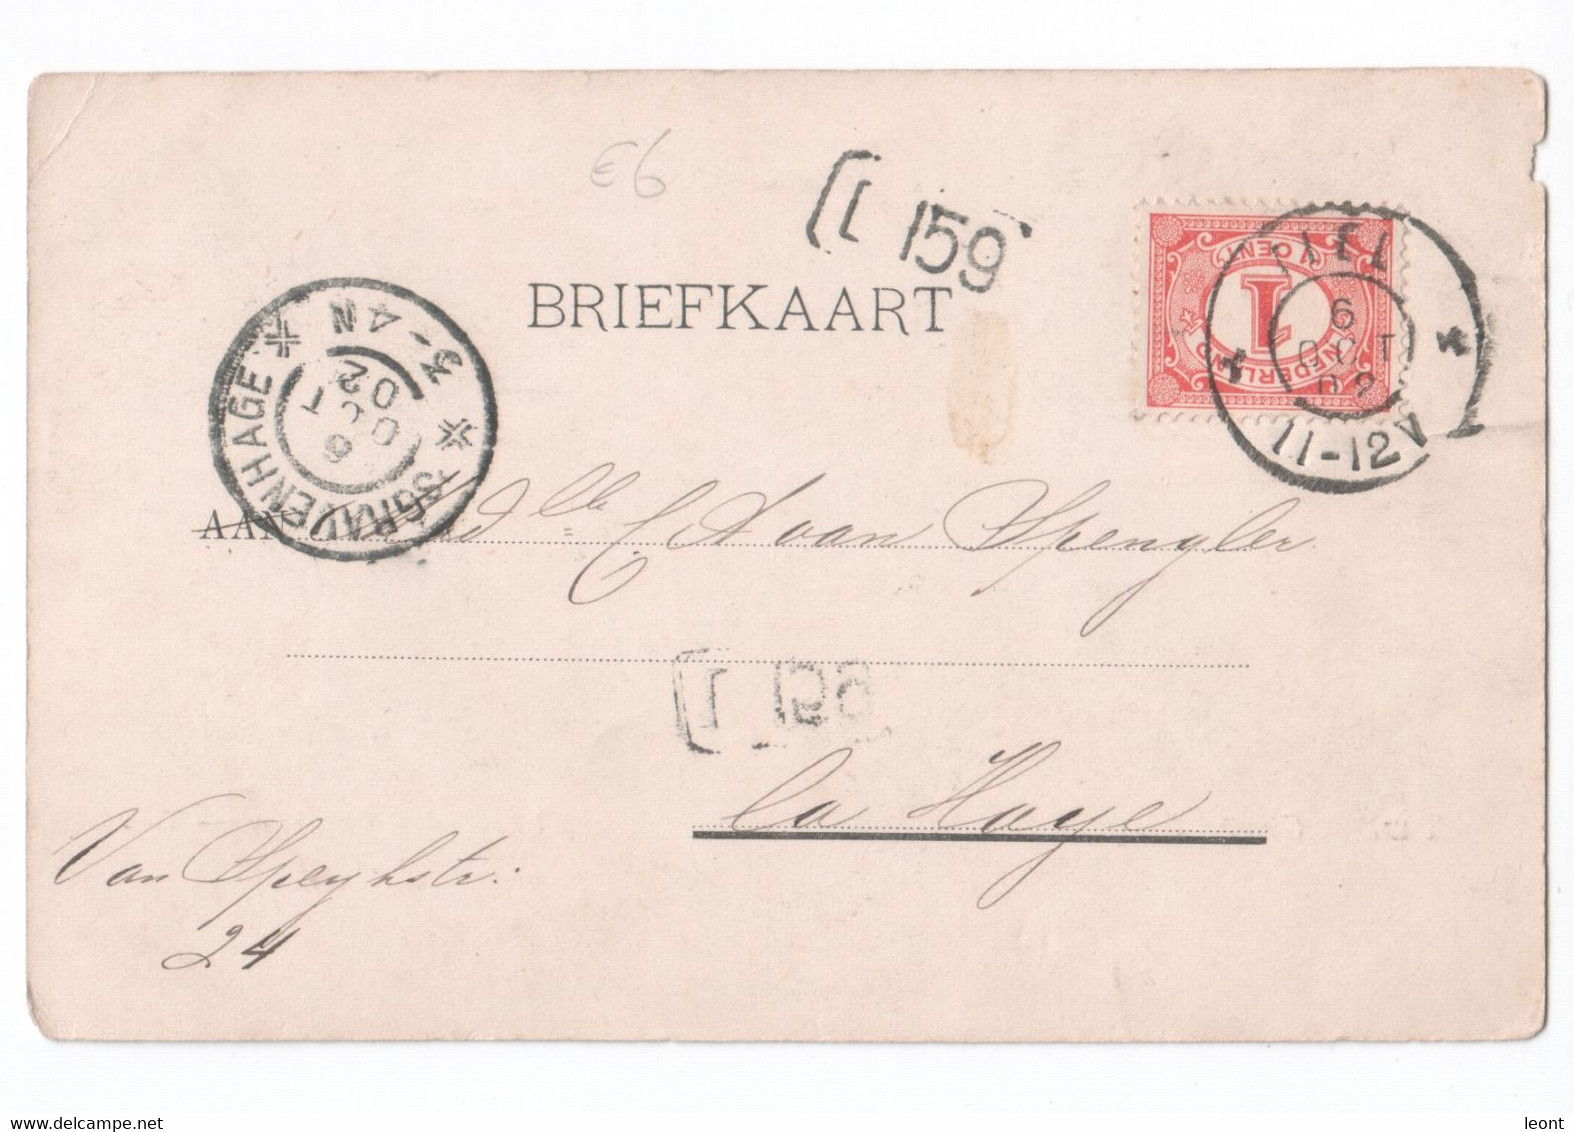 Netherlands - Tiel - Groote Brug - Uitg. Gebrs. Campagne - Sheep - 1902 - Tiel